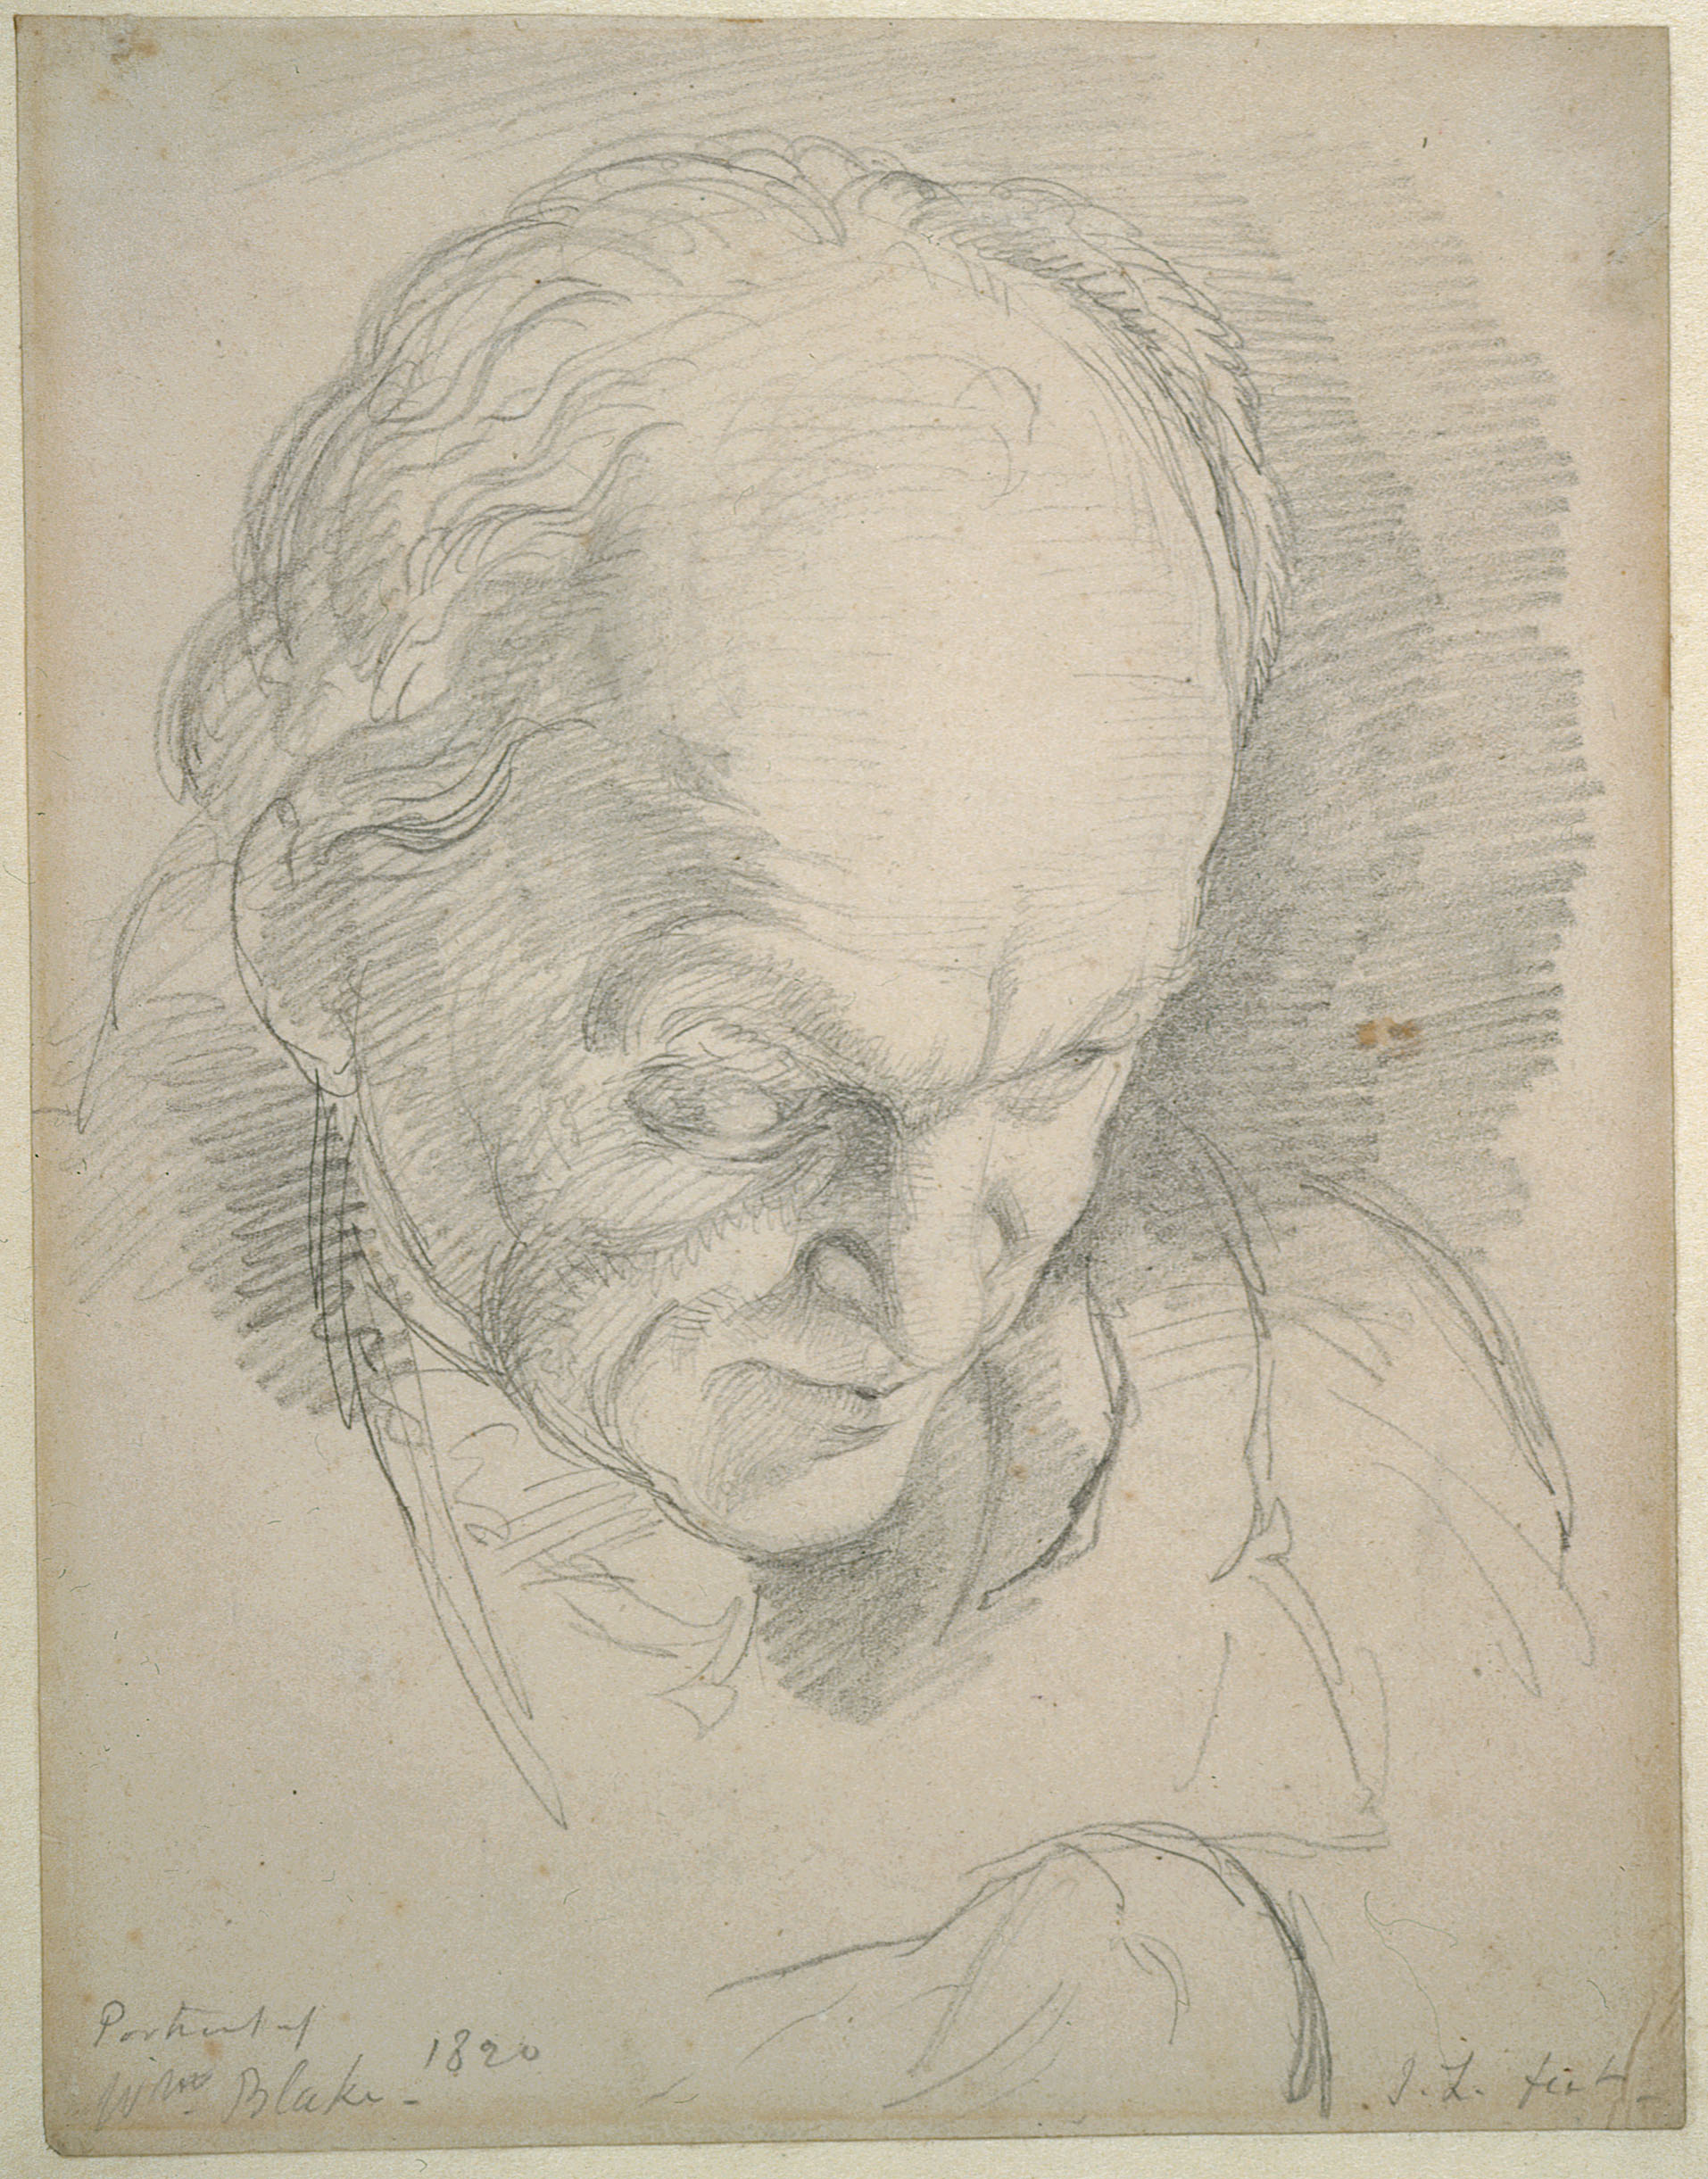 Portrait of
                Wm. Blake 1820.
                
                J. L. fecit